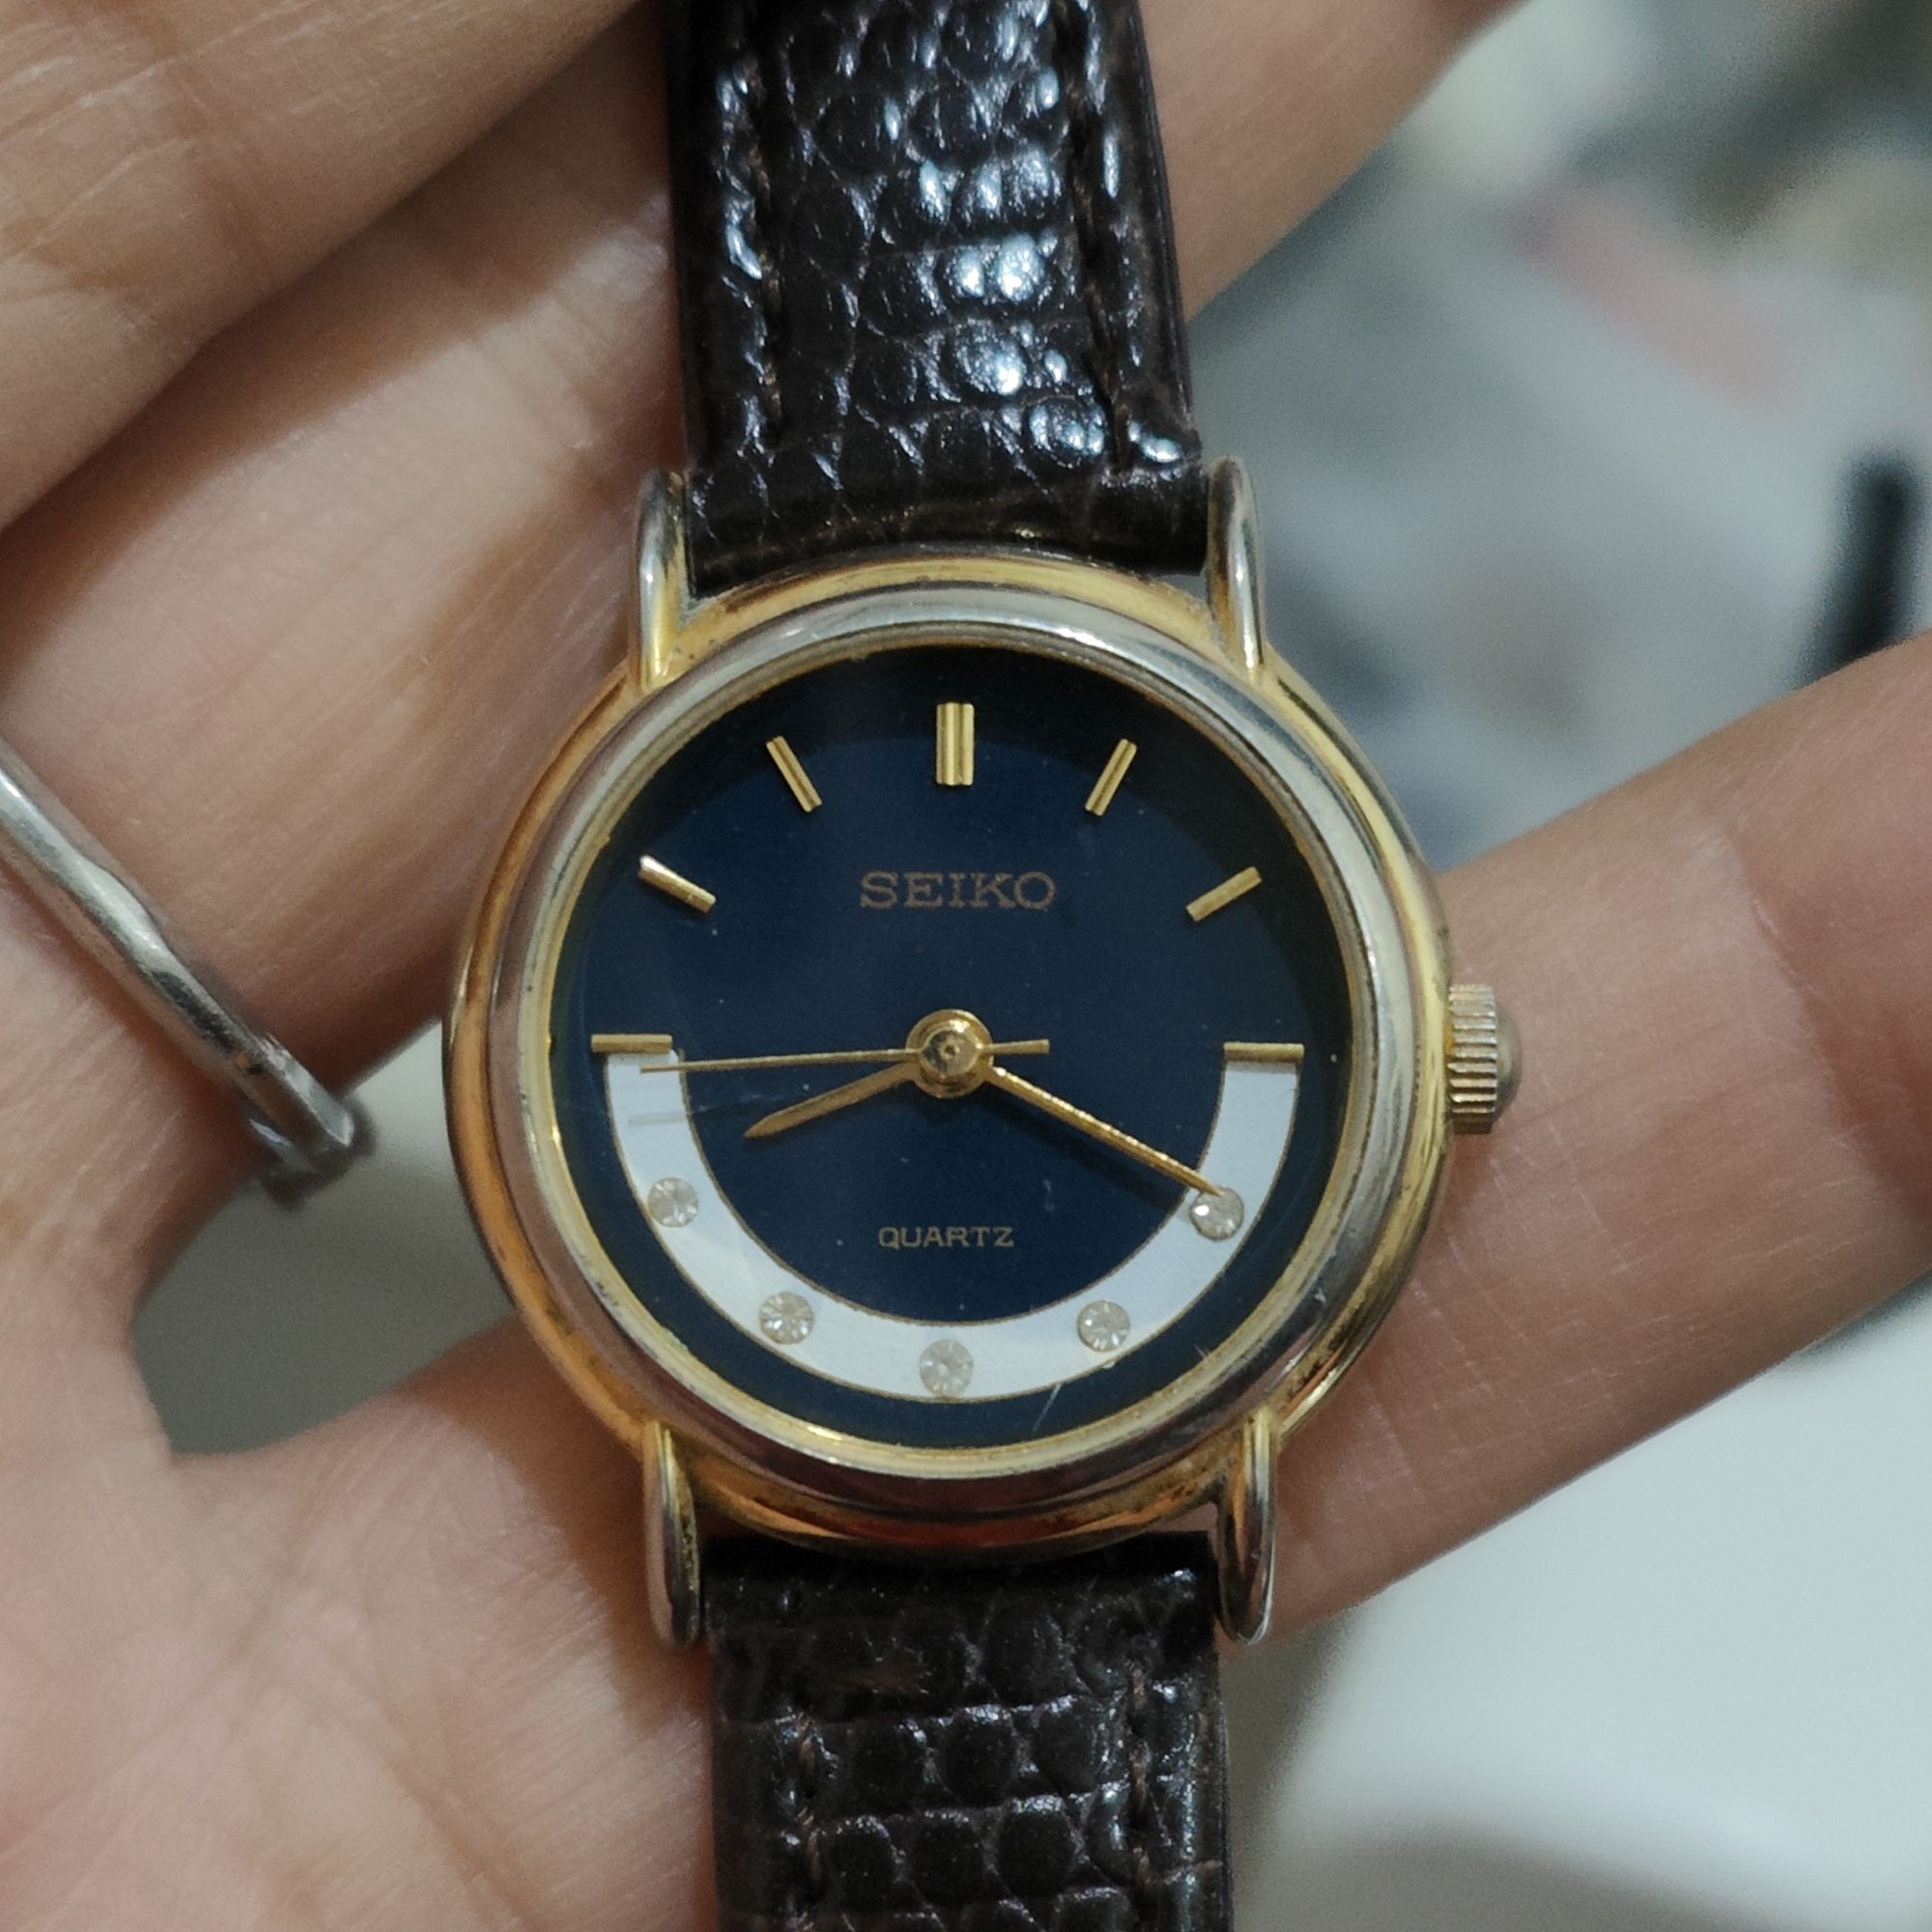 นาฬิกาญี่ปุ่นมือสอง นาฬิกาวินเทจ Seiko ระบบ quartz 